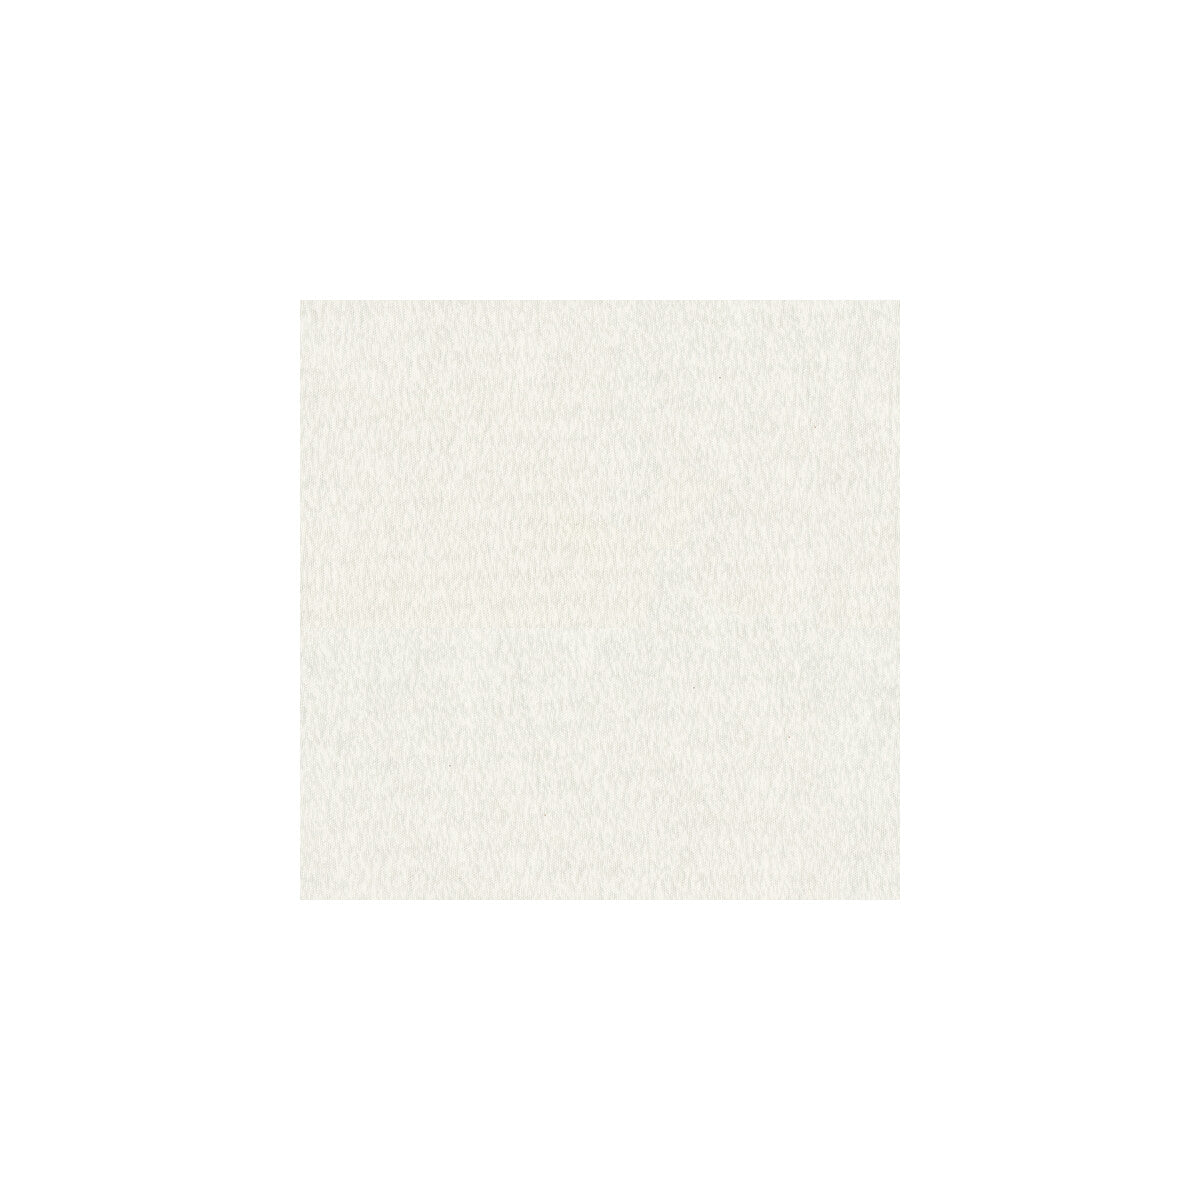 Kravet Basics fabric in 3740-1 color - pattern 3740.1.0 - by Kravet Basics